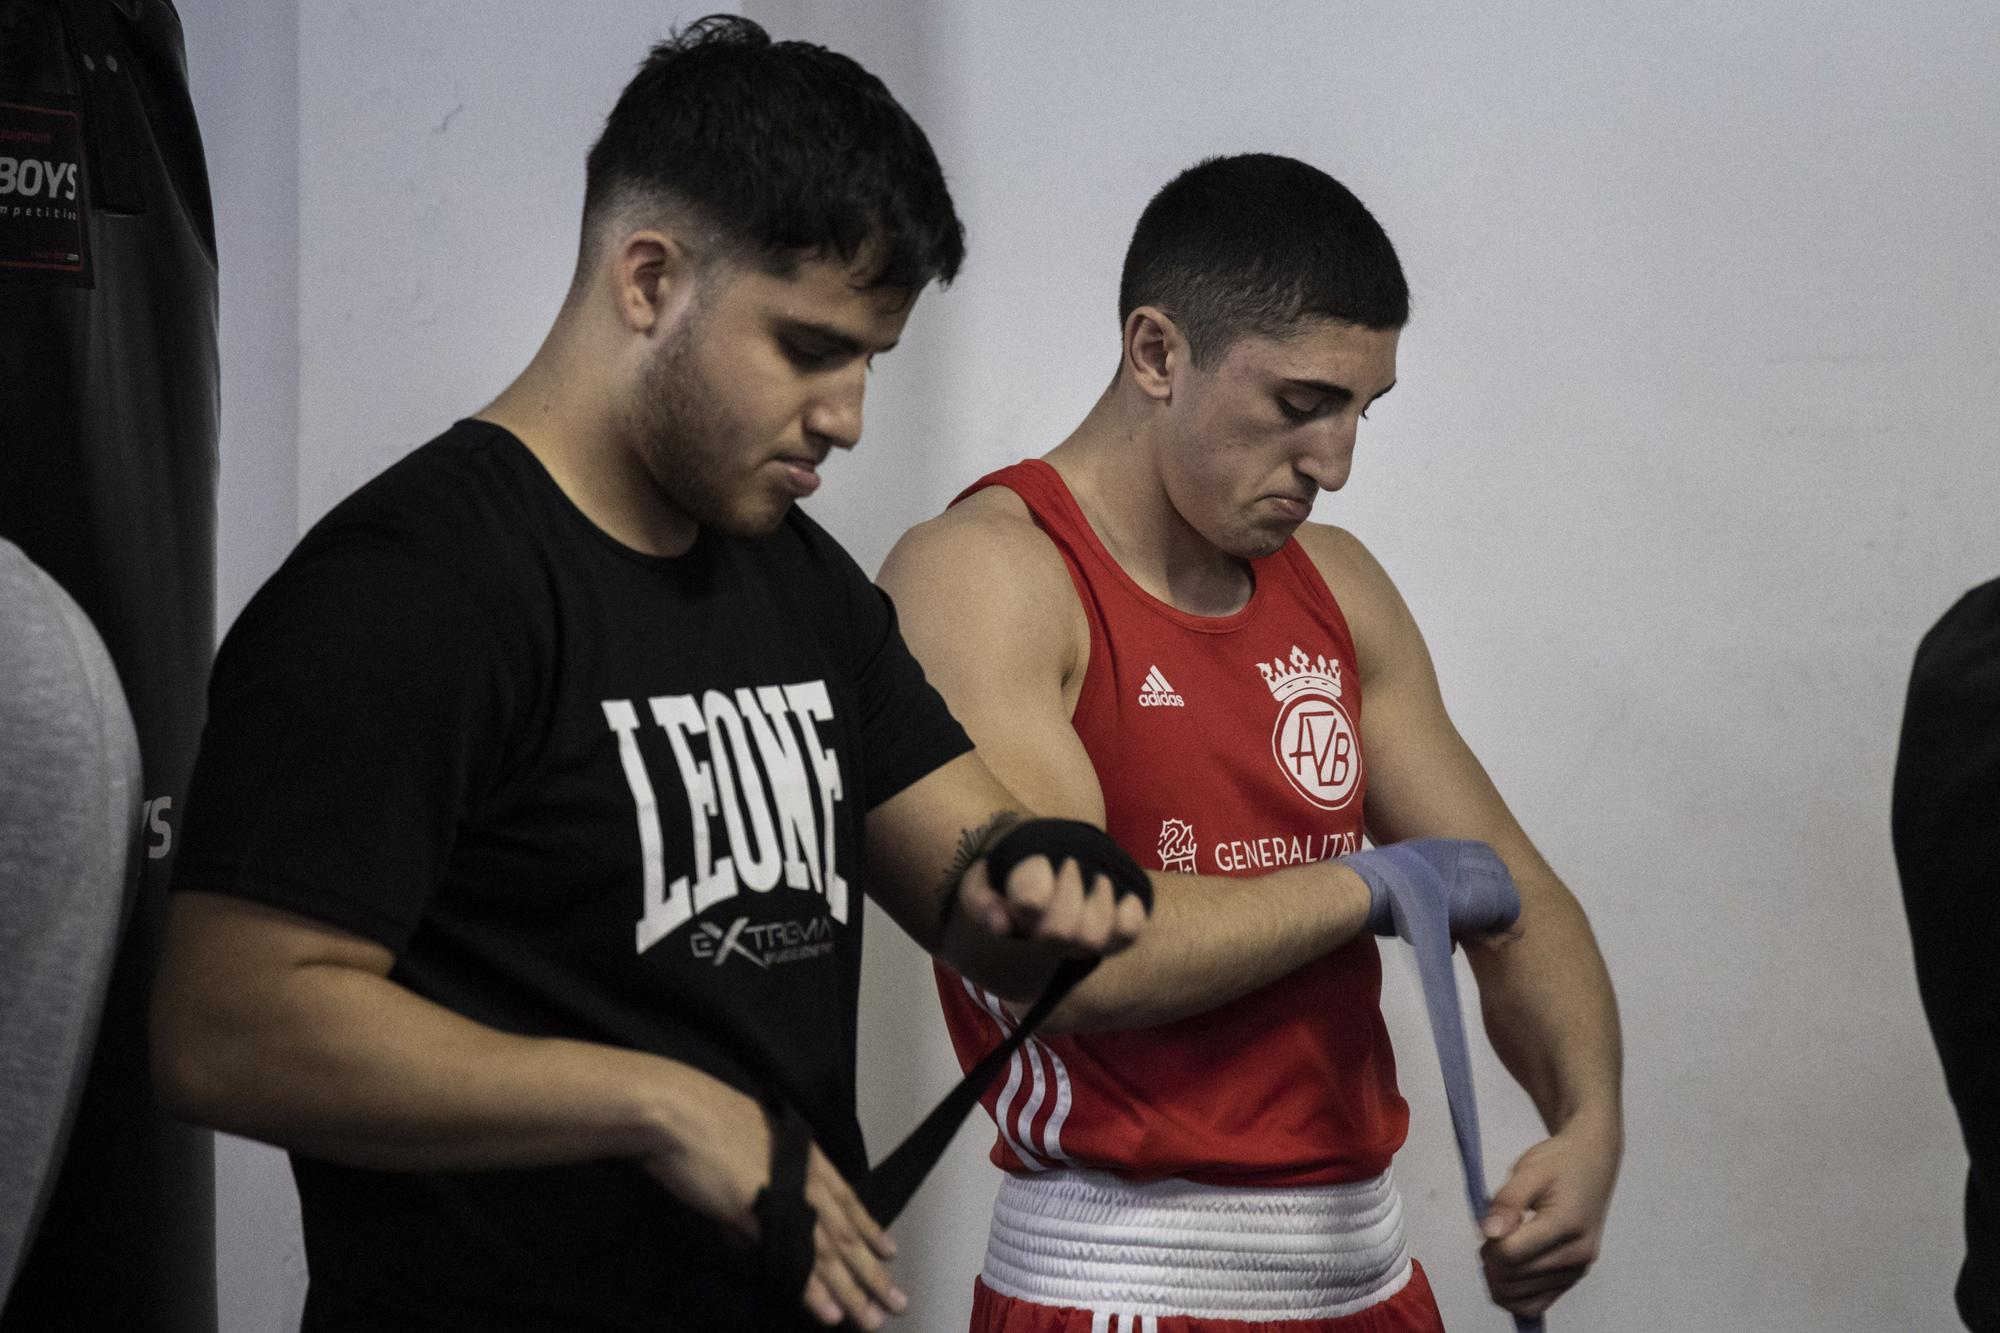 Una jornada en el Club de Boxeo de Moncada - Levante-EMV